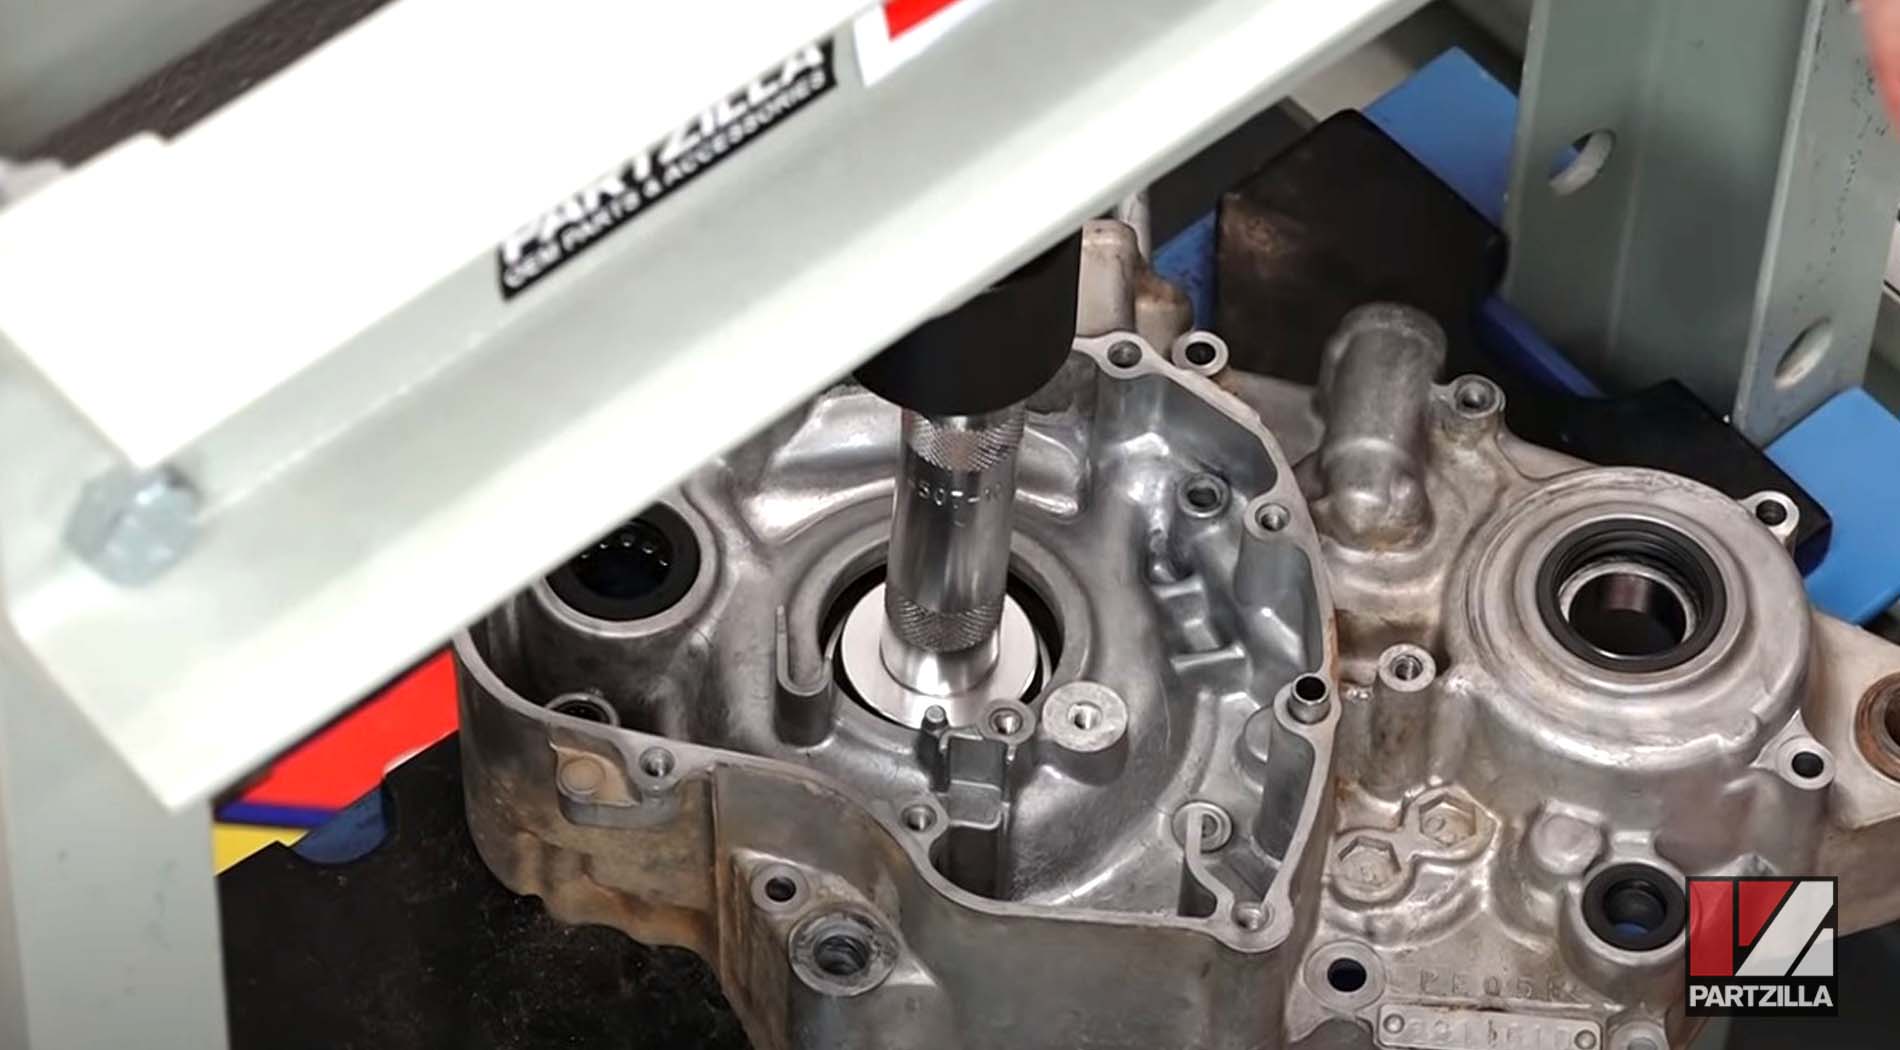 Honda motorcycle engine bearing replacement